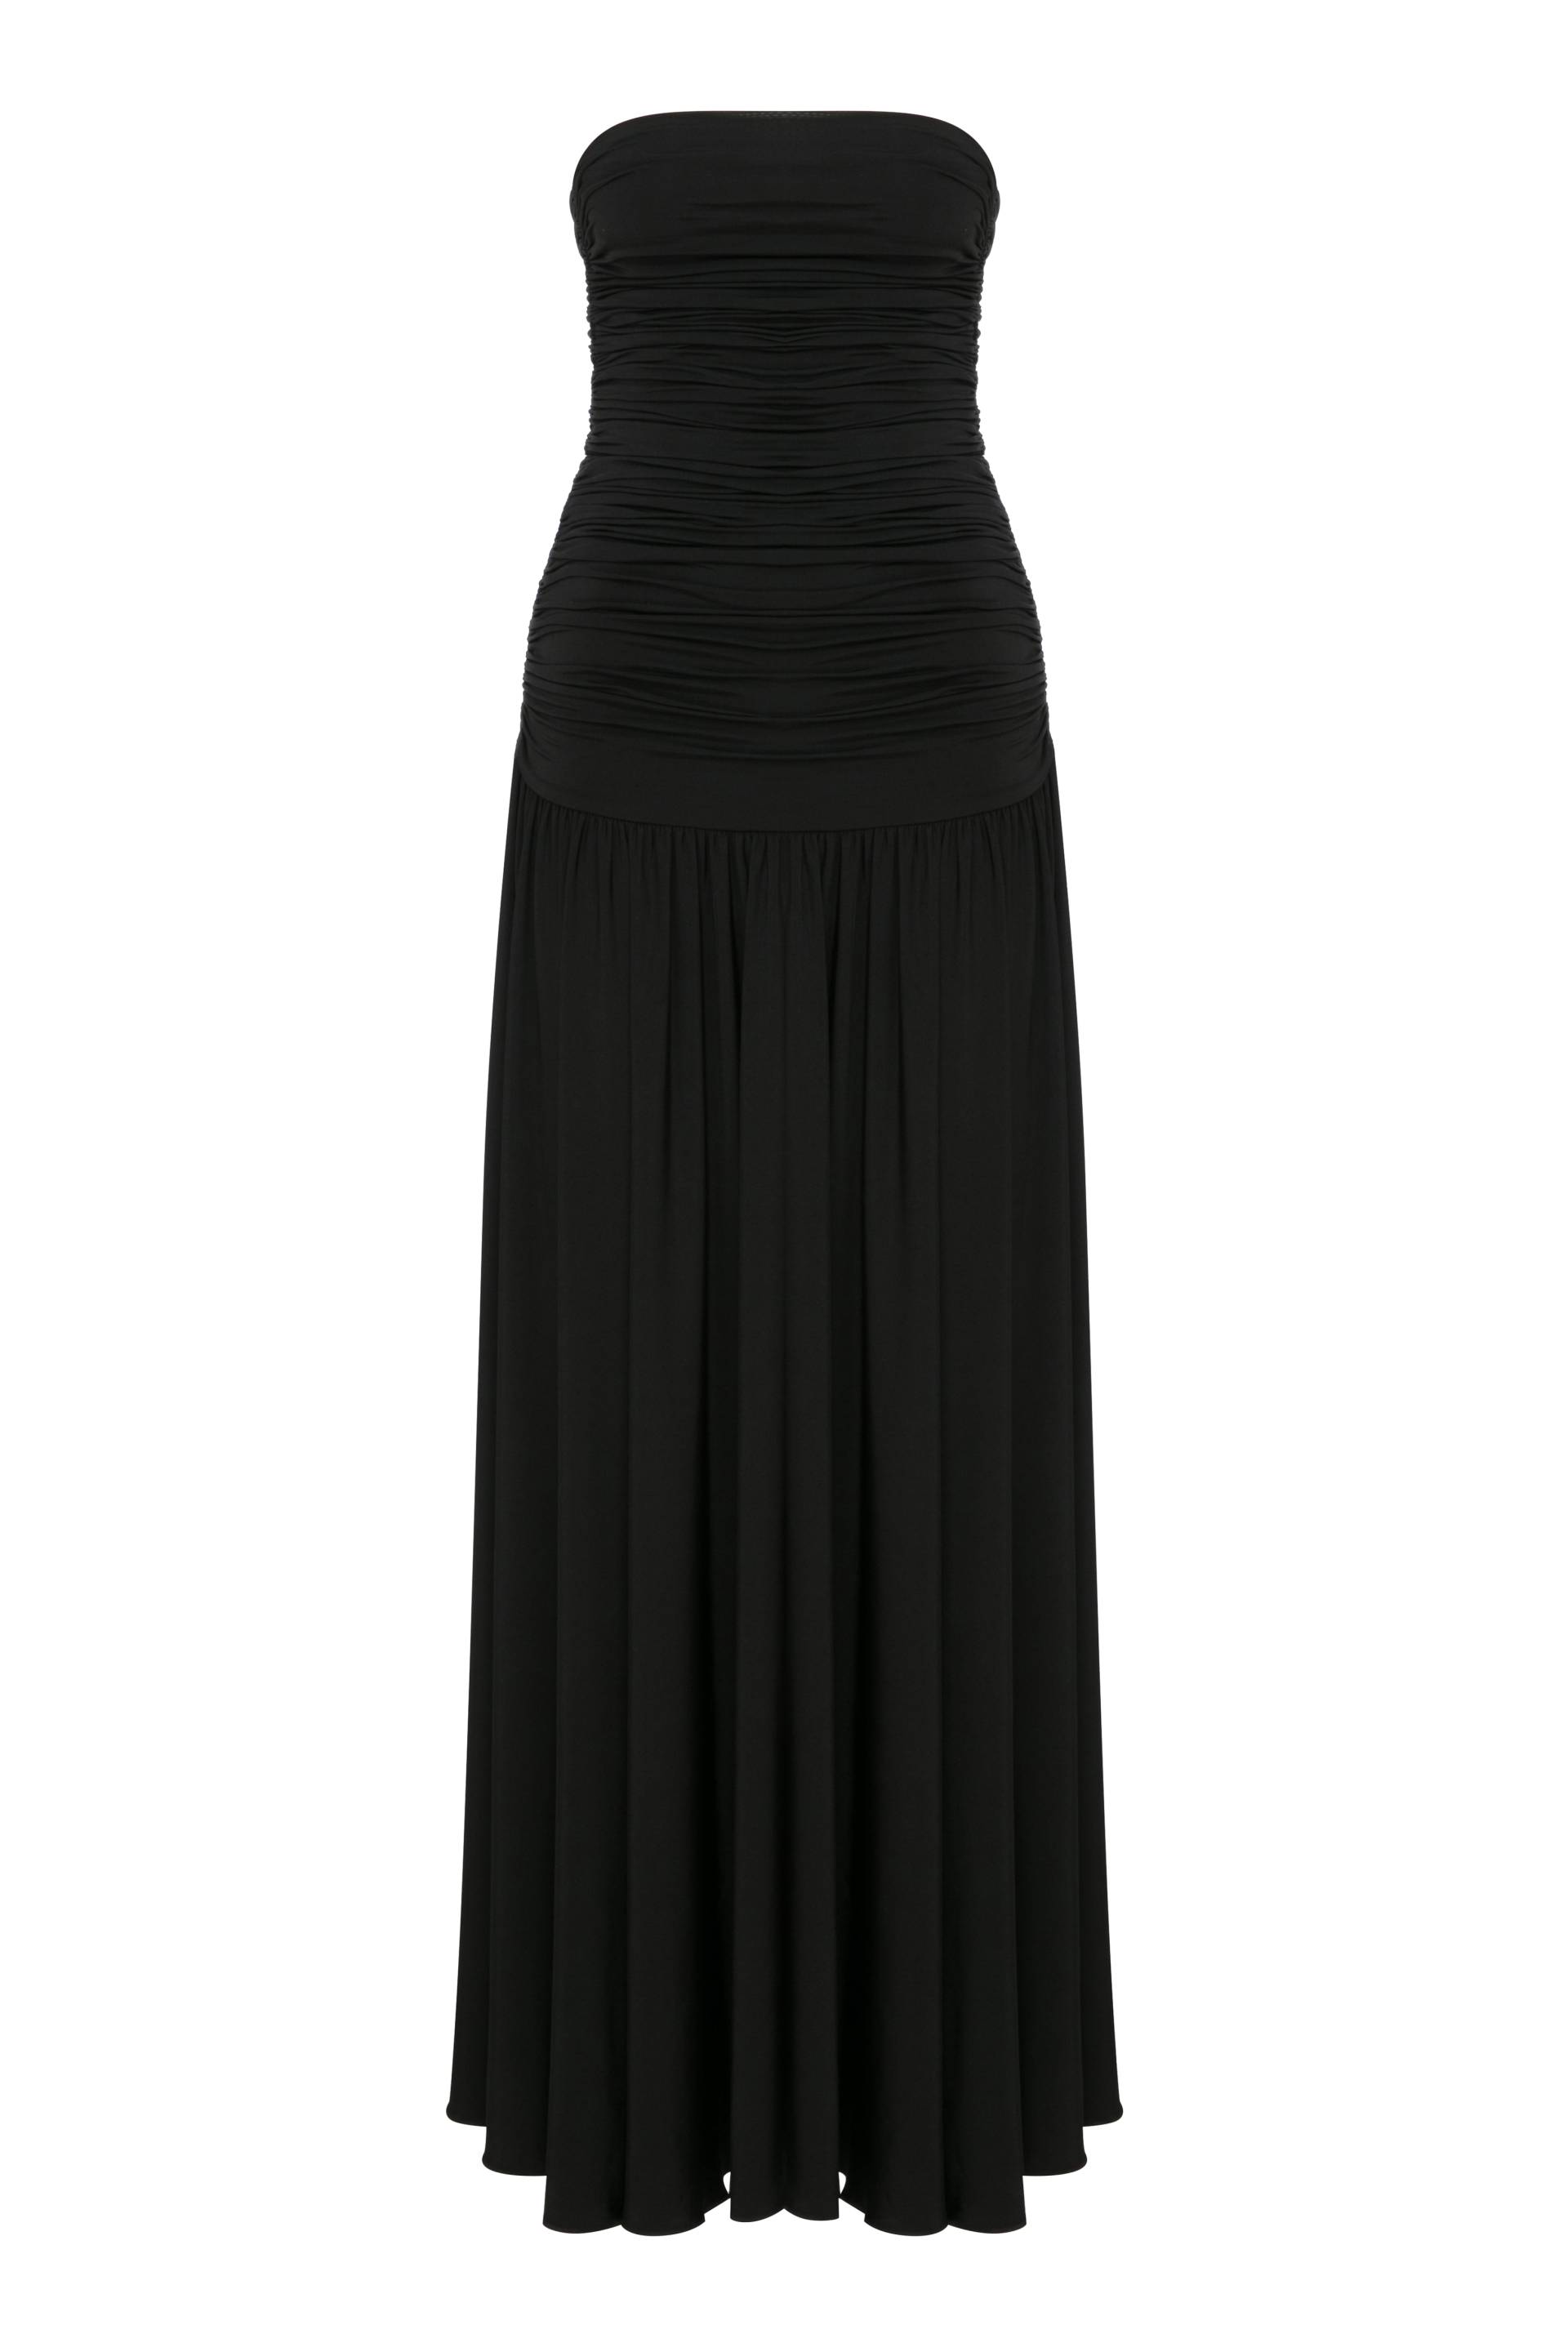 Amber Strapless Jersey Long Dress in Black von Nazli Ceren